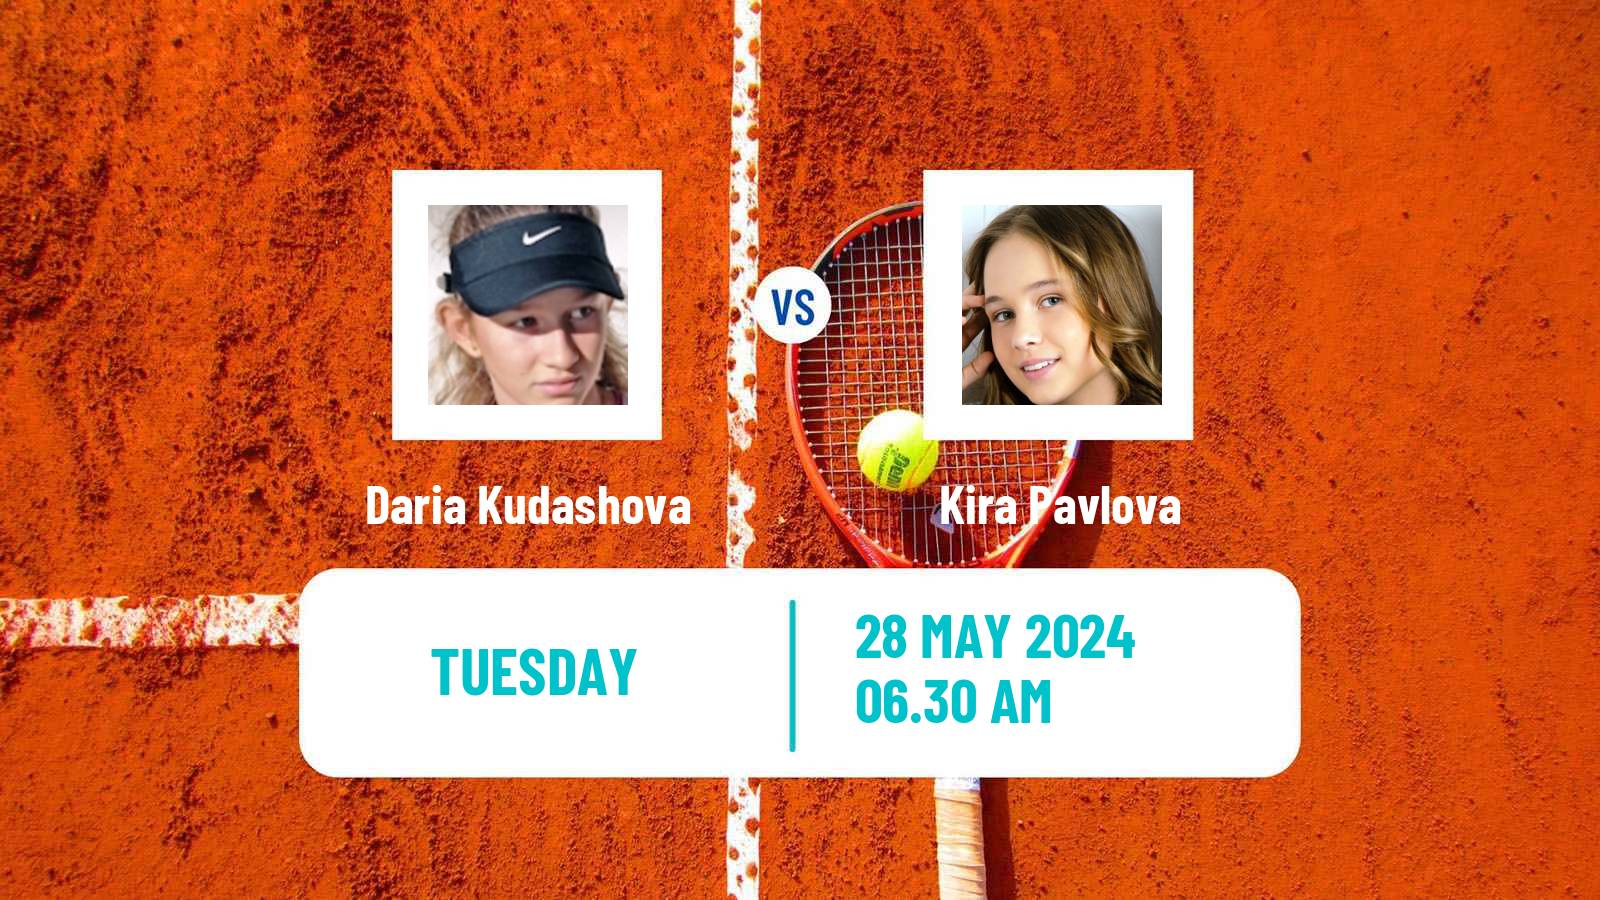 Tennis ITF W35 La Marsa Women 2024 Daria Kudashova - Kira Pavlova